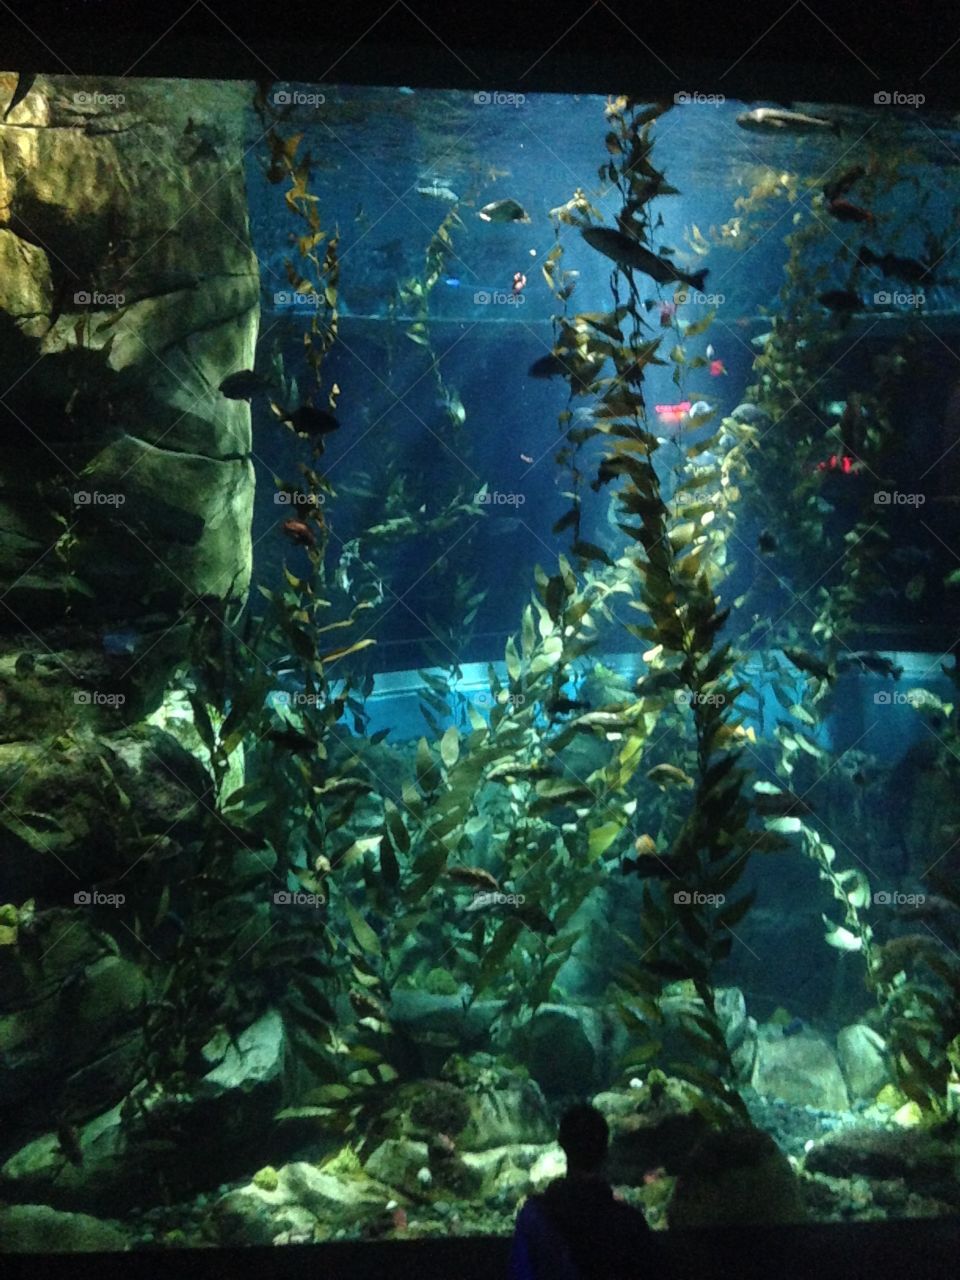 Underwater aquarium 